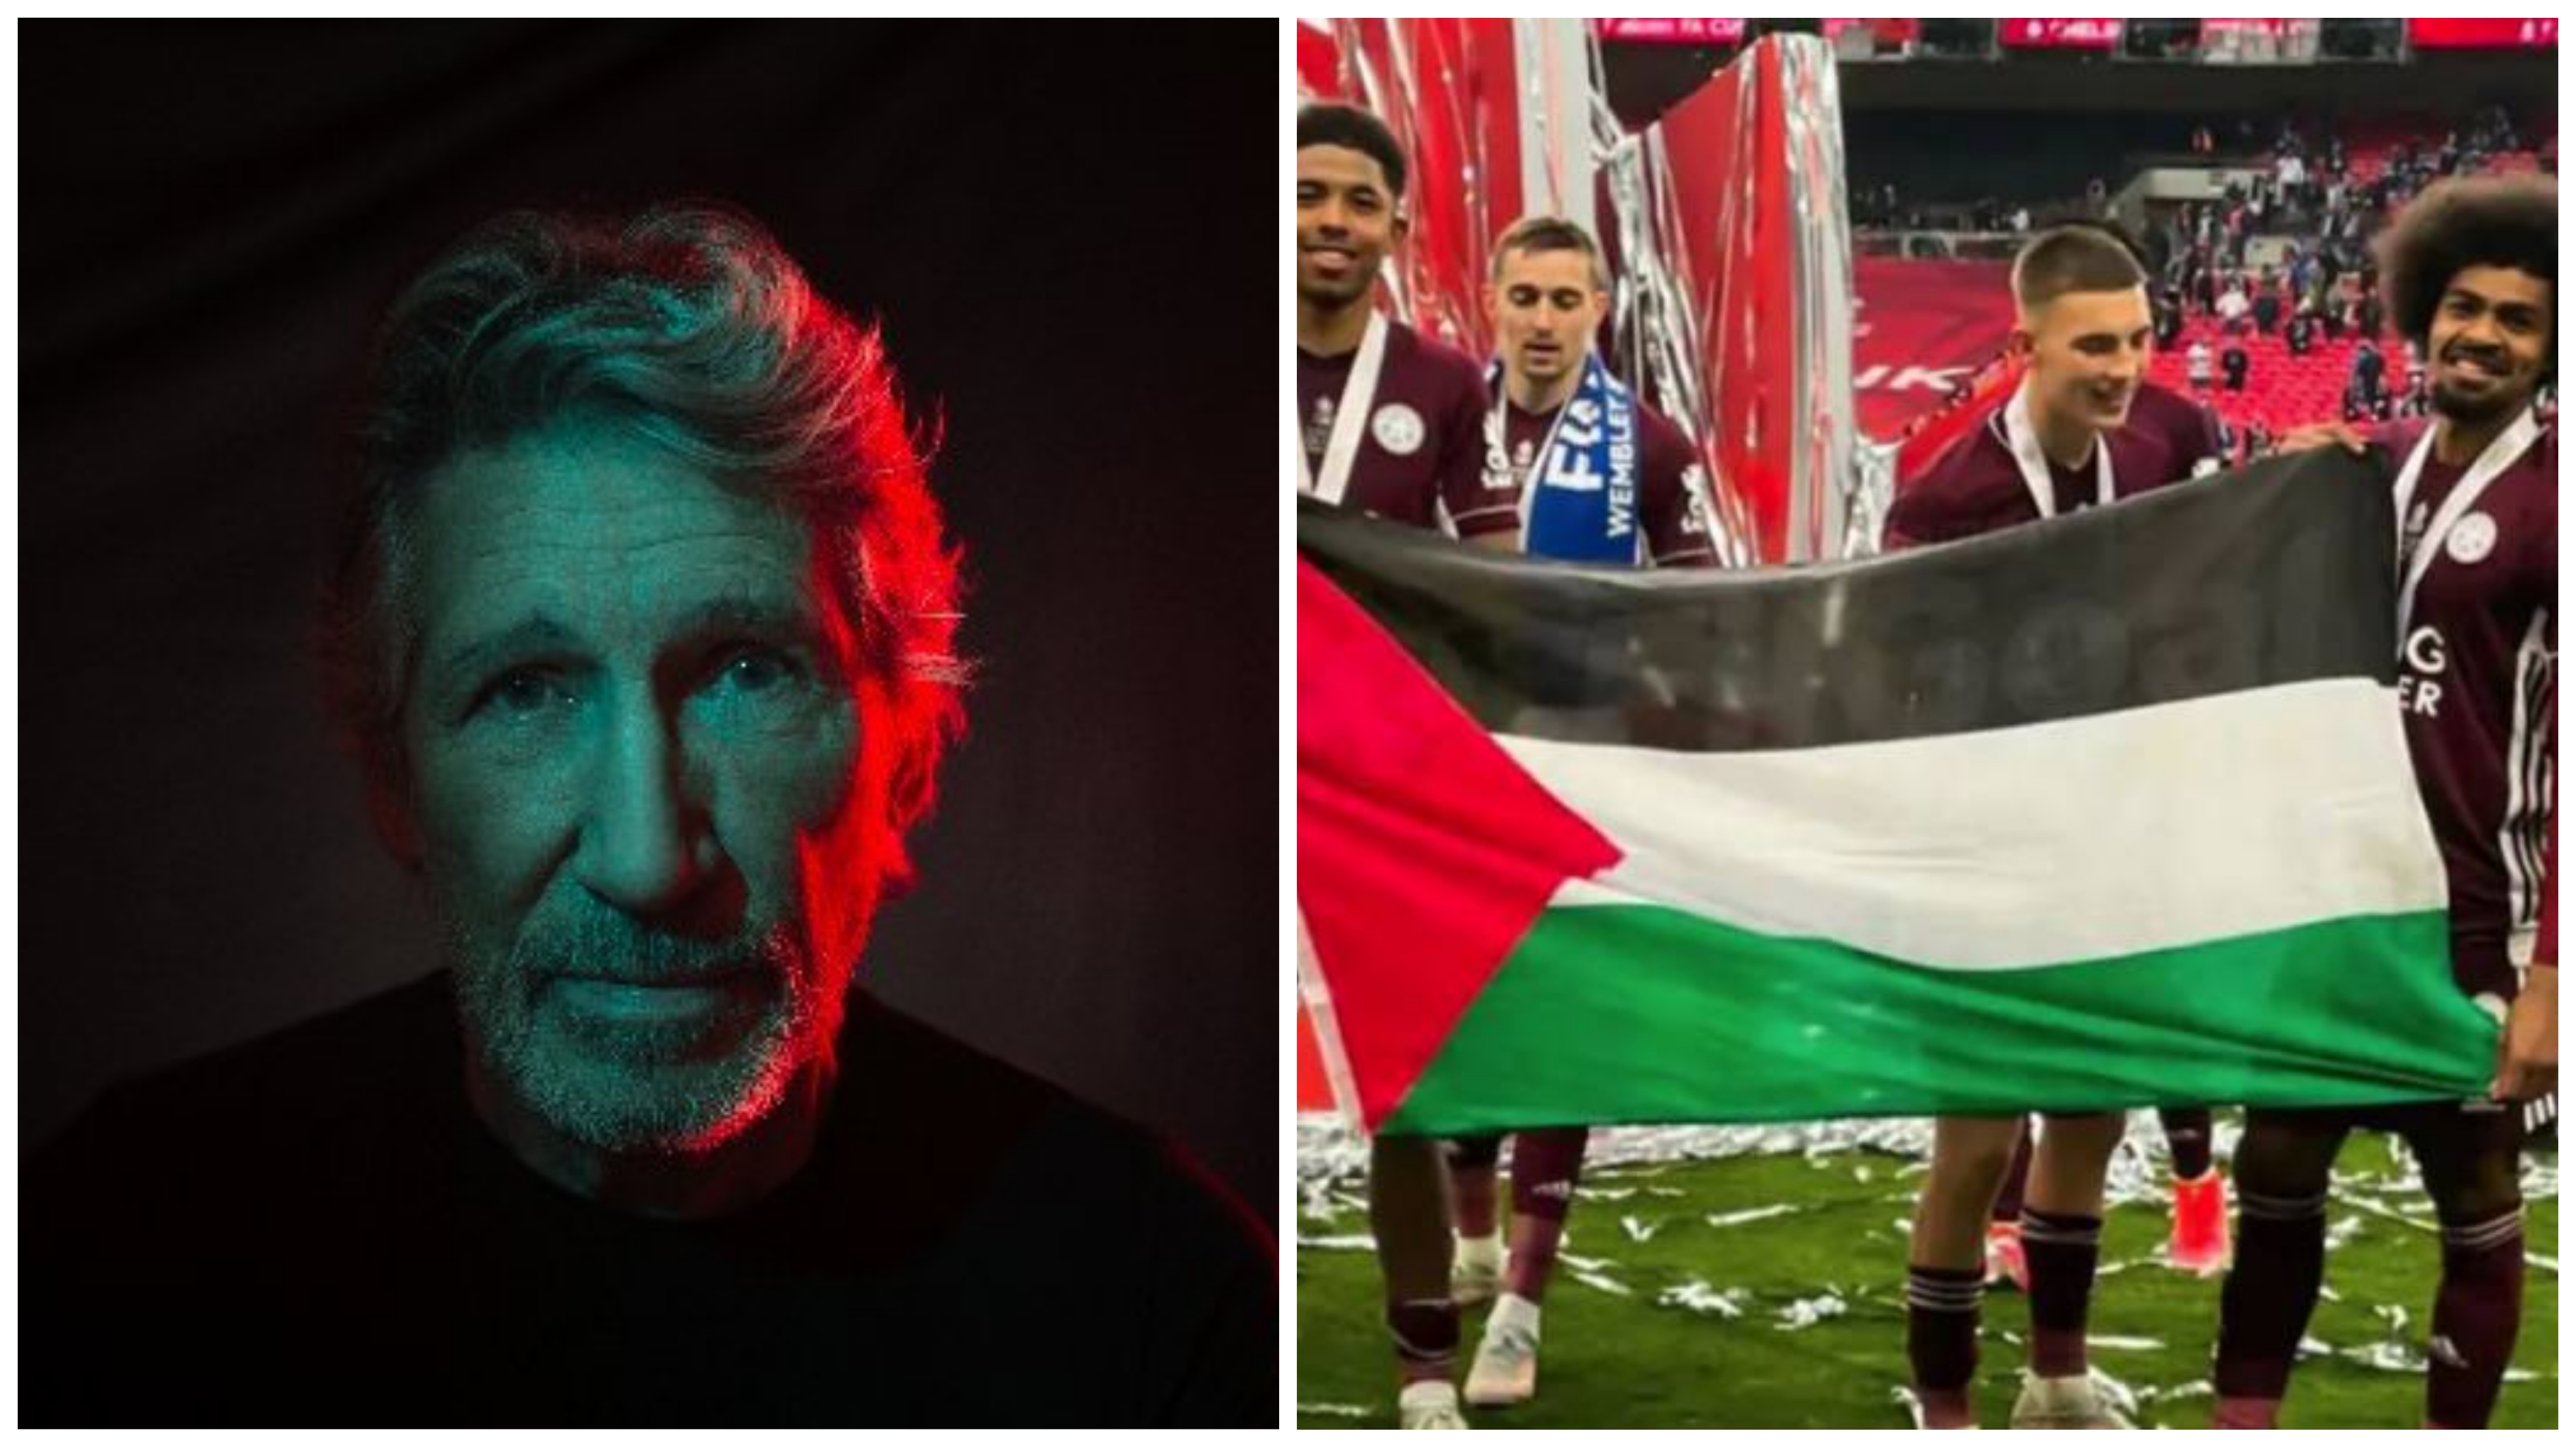 راجر واترز از برافراشتن پرچم فلسطین در ورزشگاه حمایت کرد